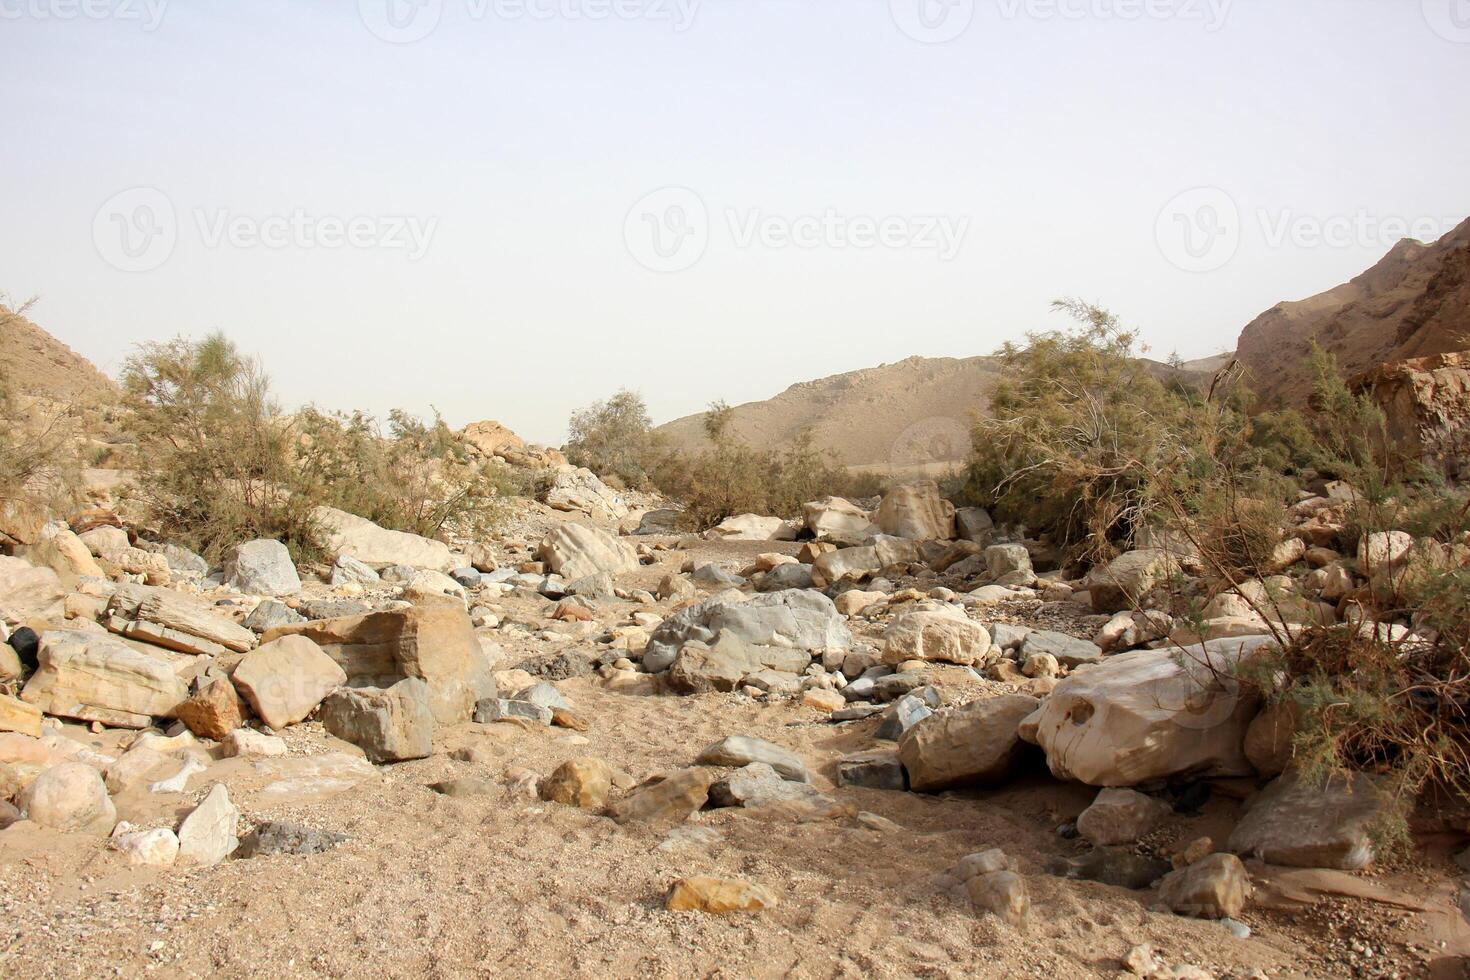 de negev is een woestijn in de midden- oosten, gelegen in Israël en bezetten over 60 van haar grondgebied. foto